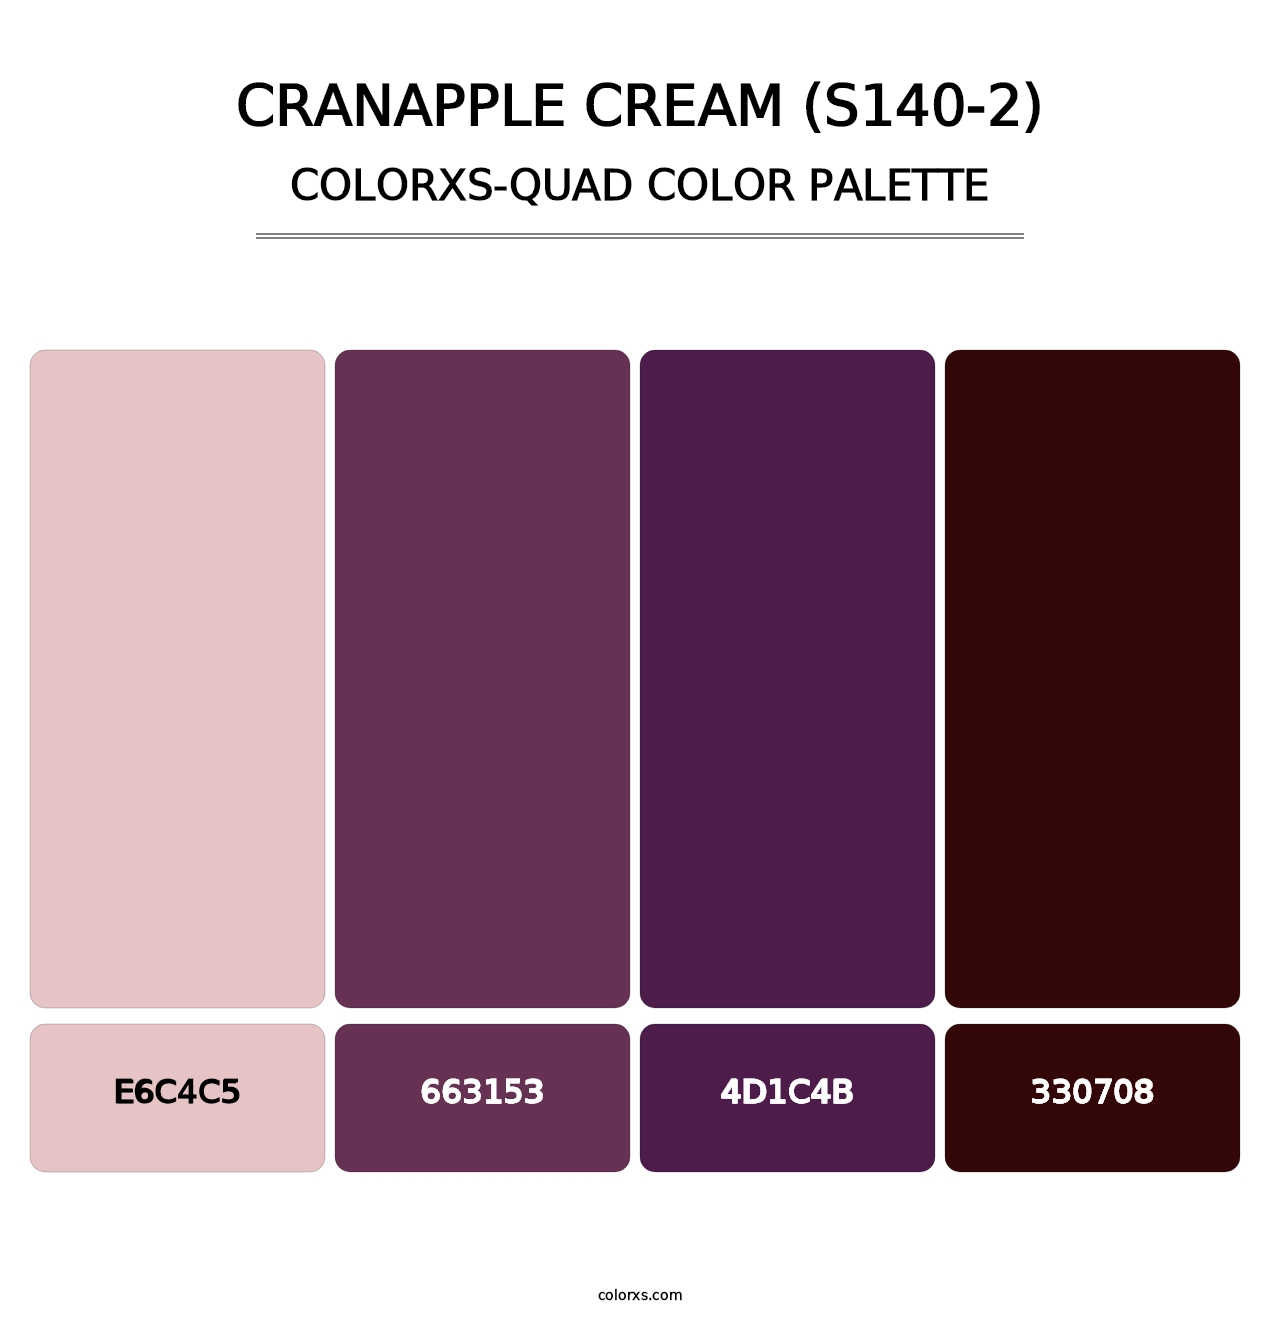 Cranapple Cream (S140-2) - Colorxs Quad Palette